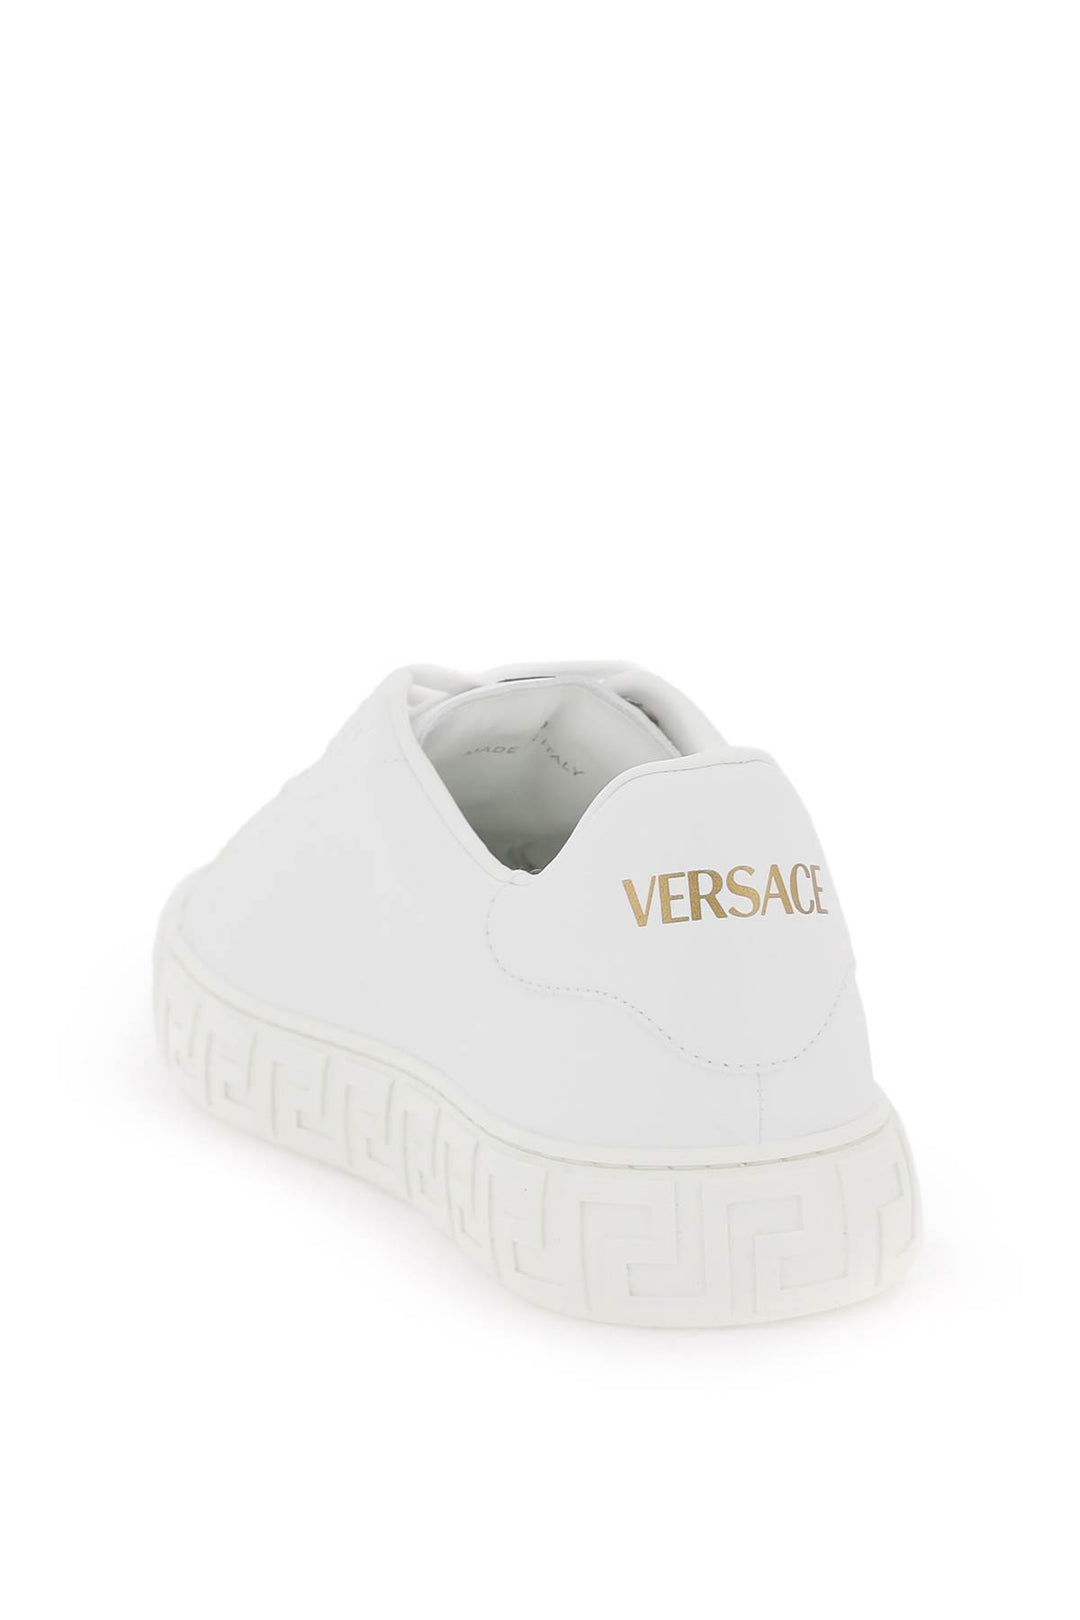 Versace Greca Sneakers   Bianco